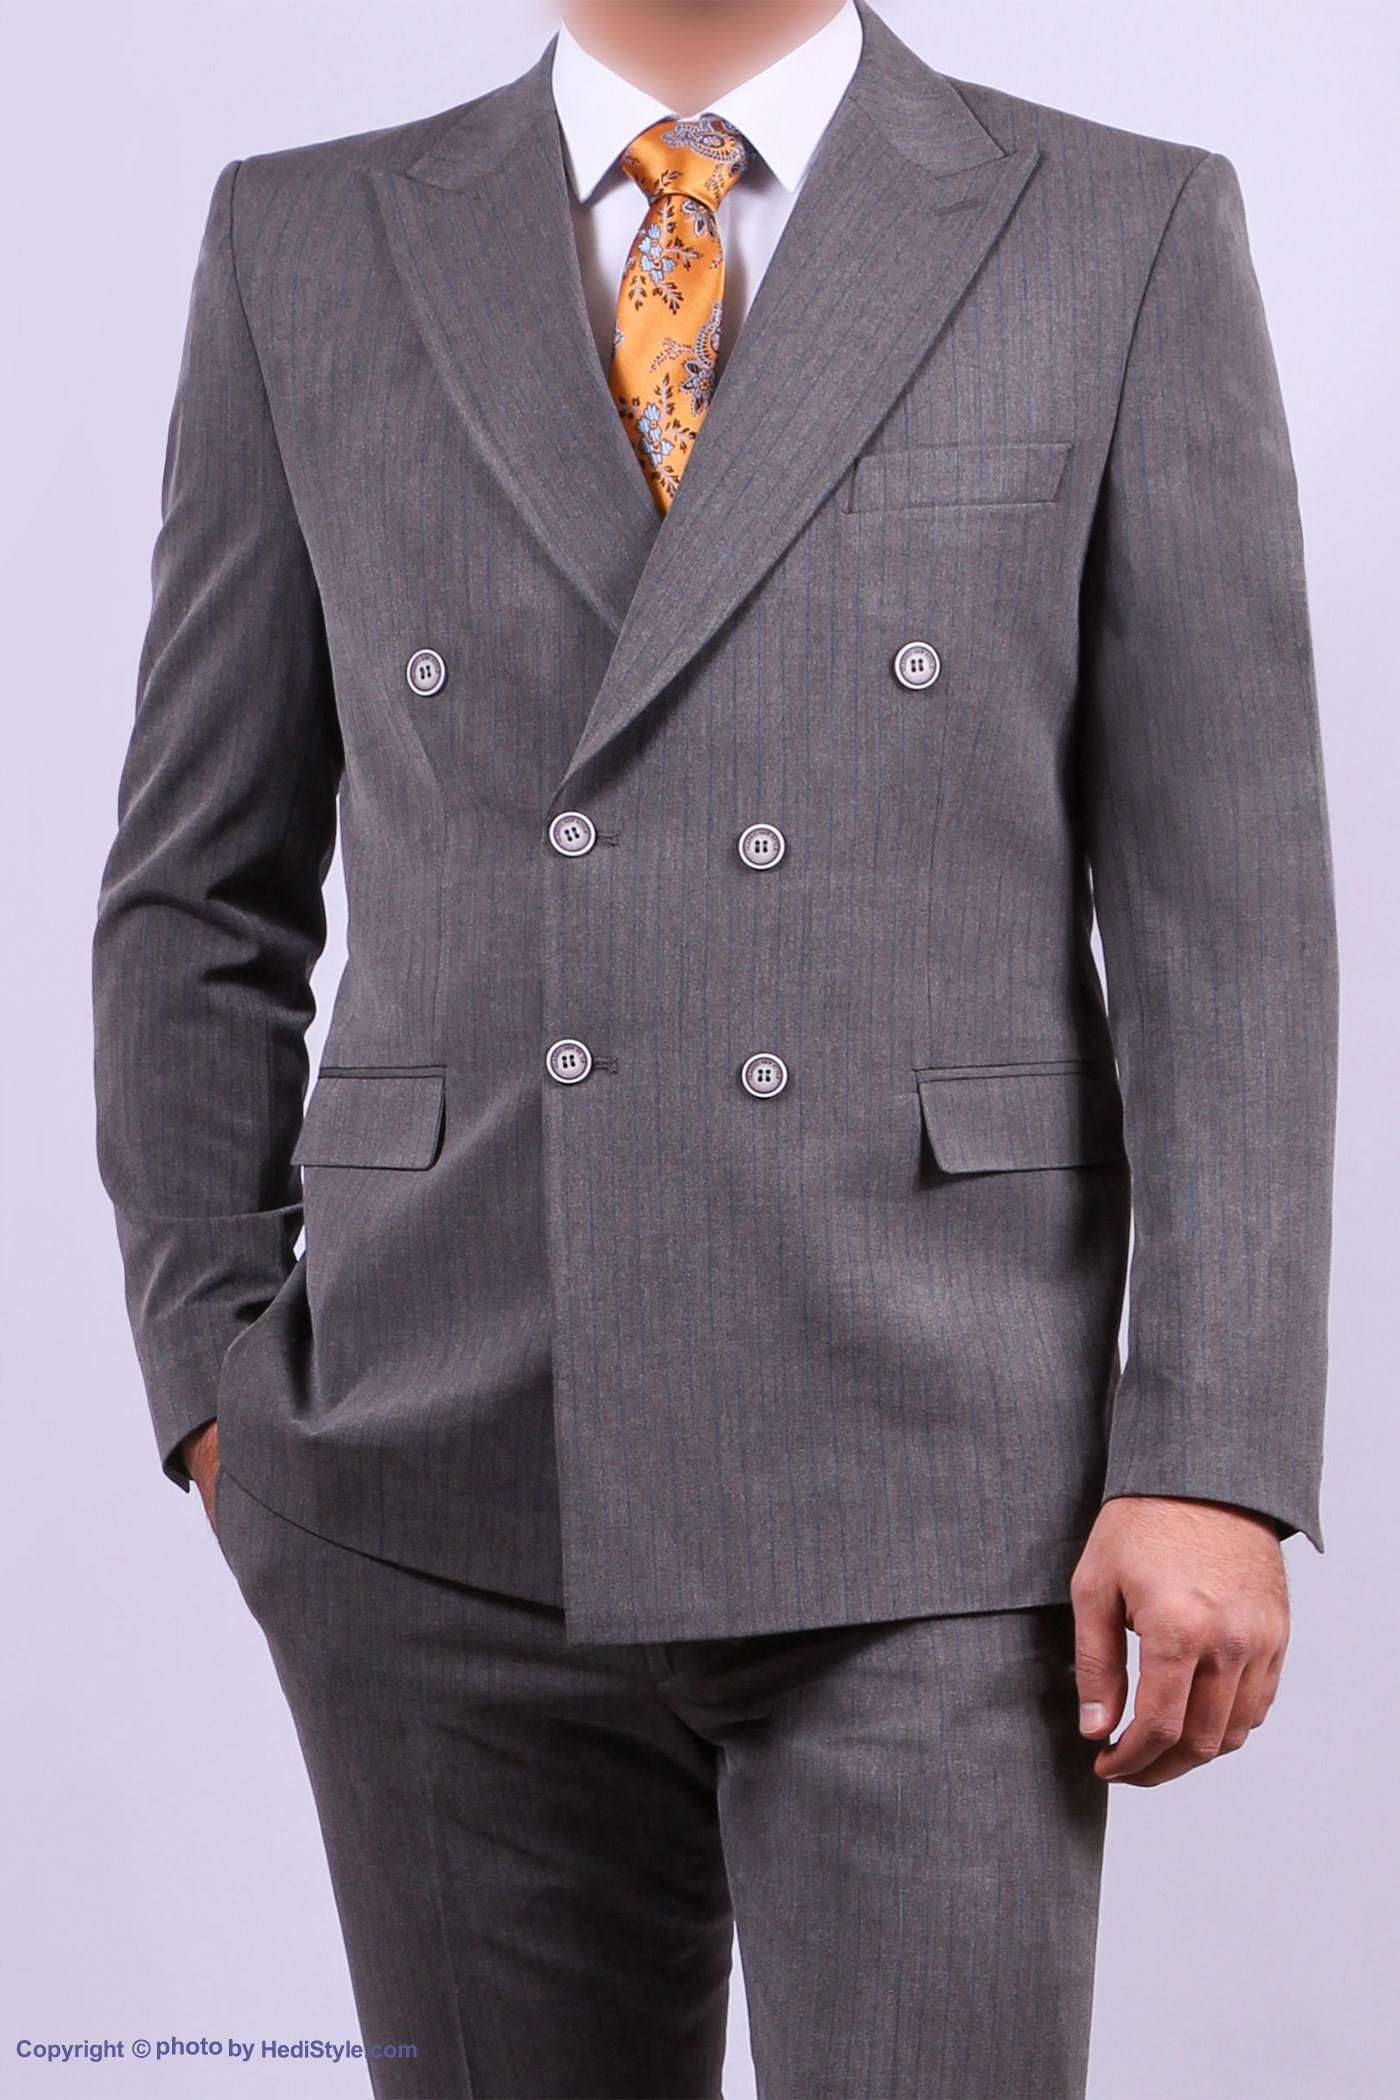 Six-button diplomat model suit